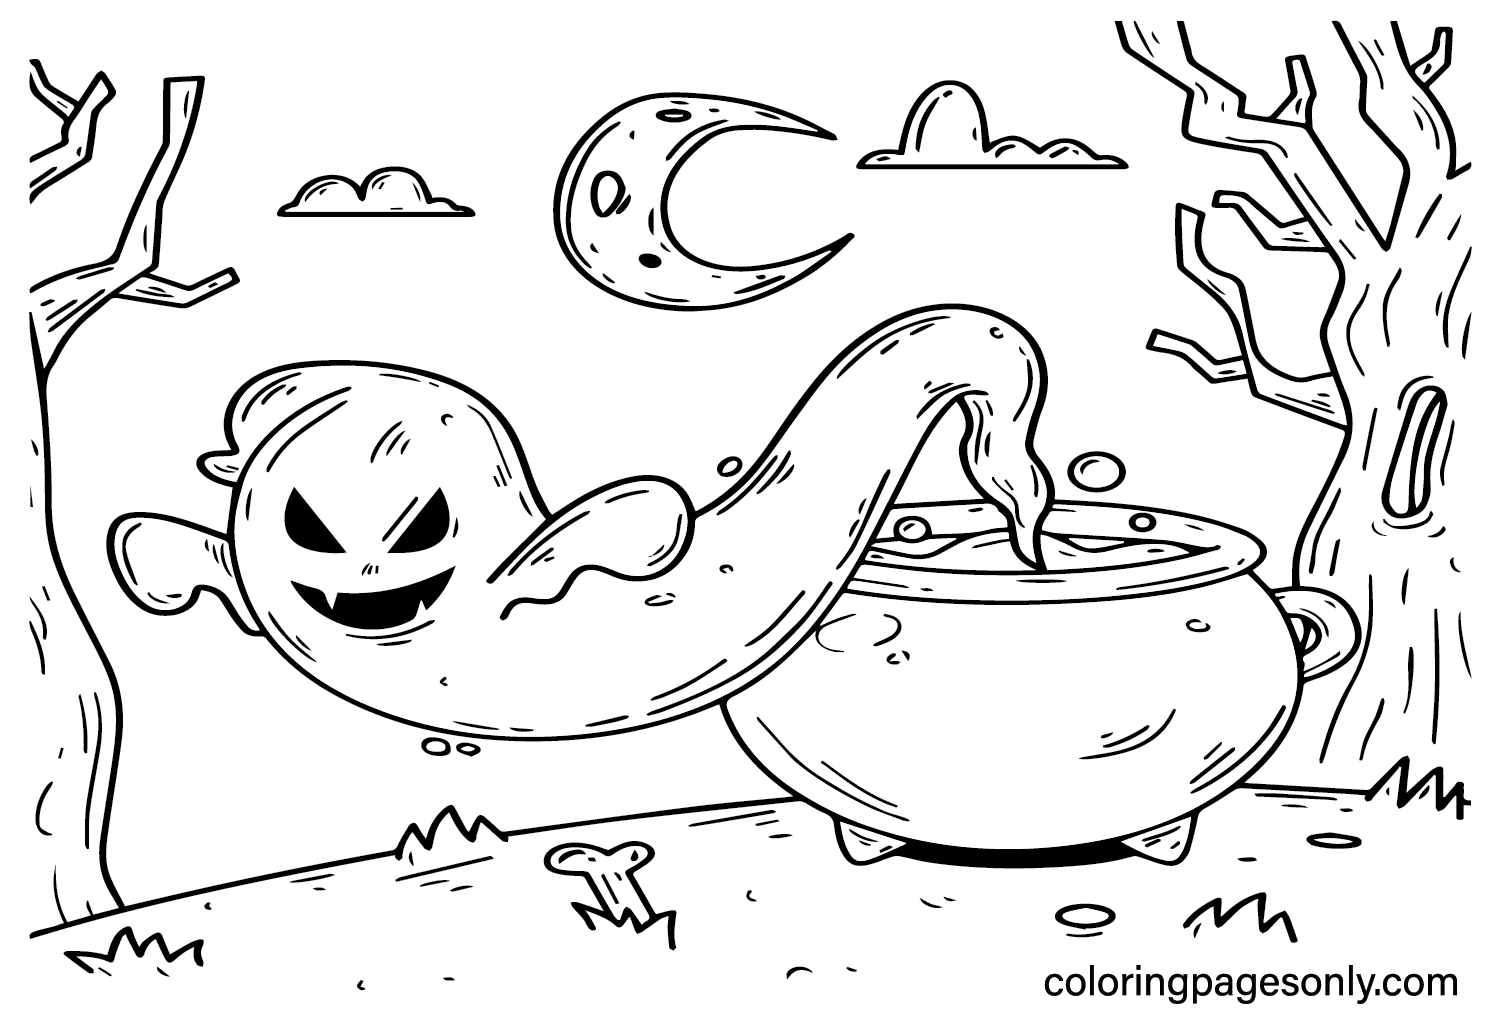 Страшные раскраски Хэллоуина для взрослых от Spooktacular Halloween